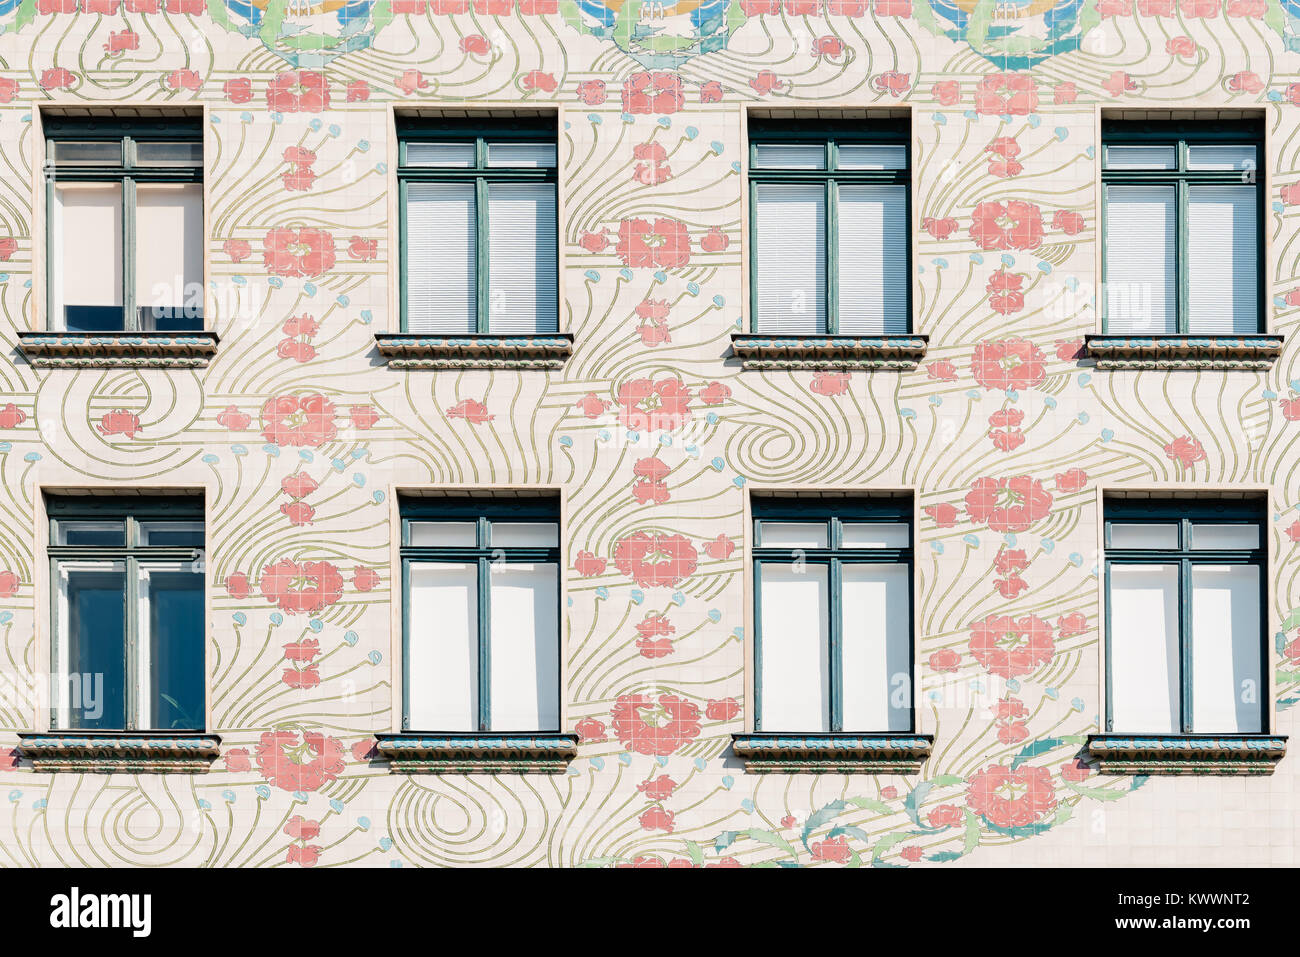 Vienna, Austria - Agosto 17, 2017: particolare della Majolikahaus, Maioliche House Apartment House progettata dall architetto Otto Wagner in stile secessione. Foto Stock